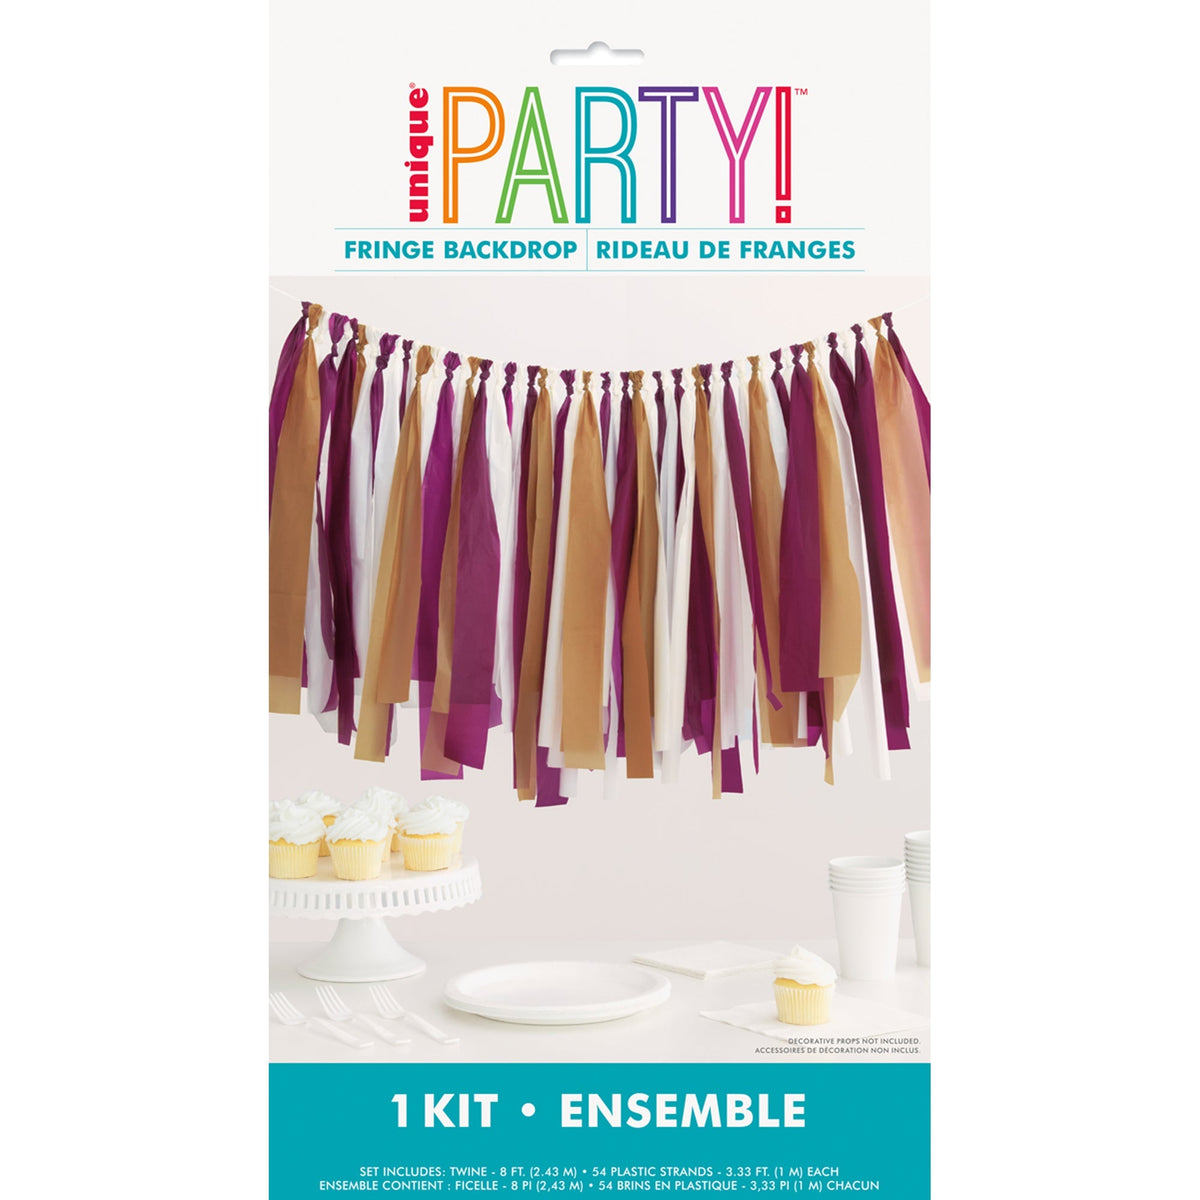 UNIQUE PARTY FAVORS Thanksgiving Friendsgiving Fringe Plastic Decorative Backdrop Kit 011179220748